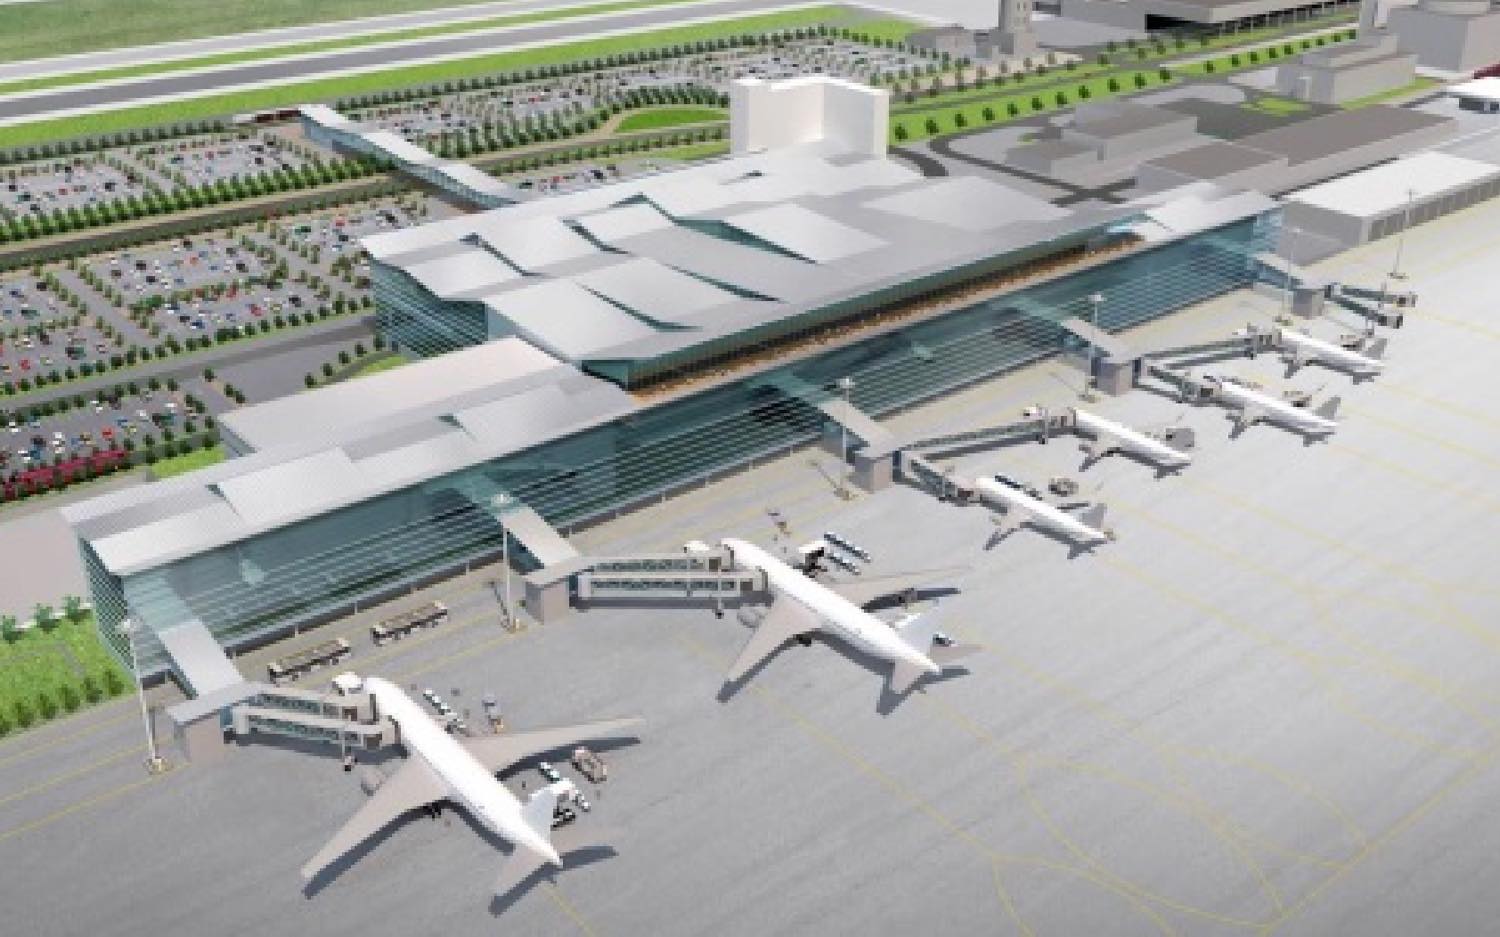 新千歳空港 第3ターミナル T3 整備計画 コロナ禍の影響で投資見直しスケジュール変更か Re Urbanization 再都市化